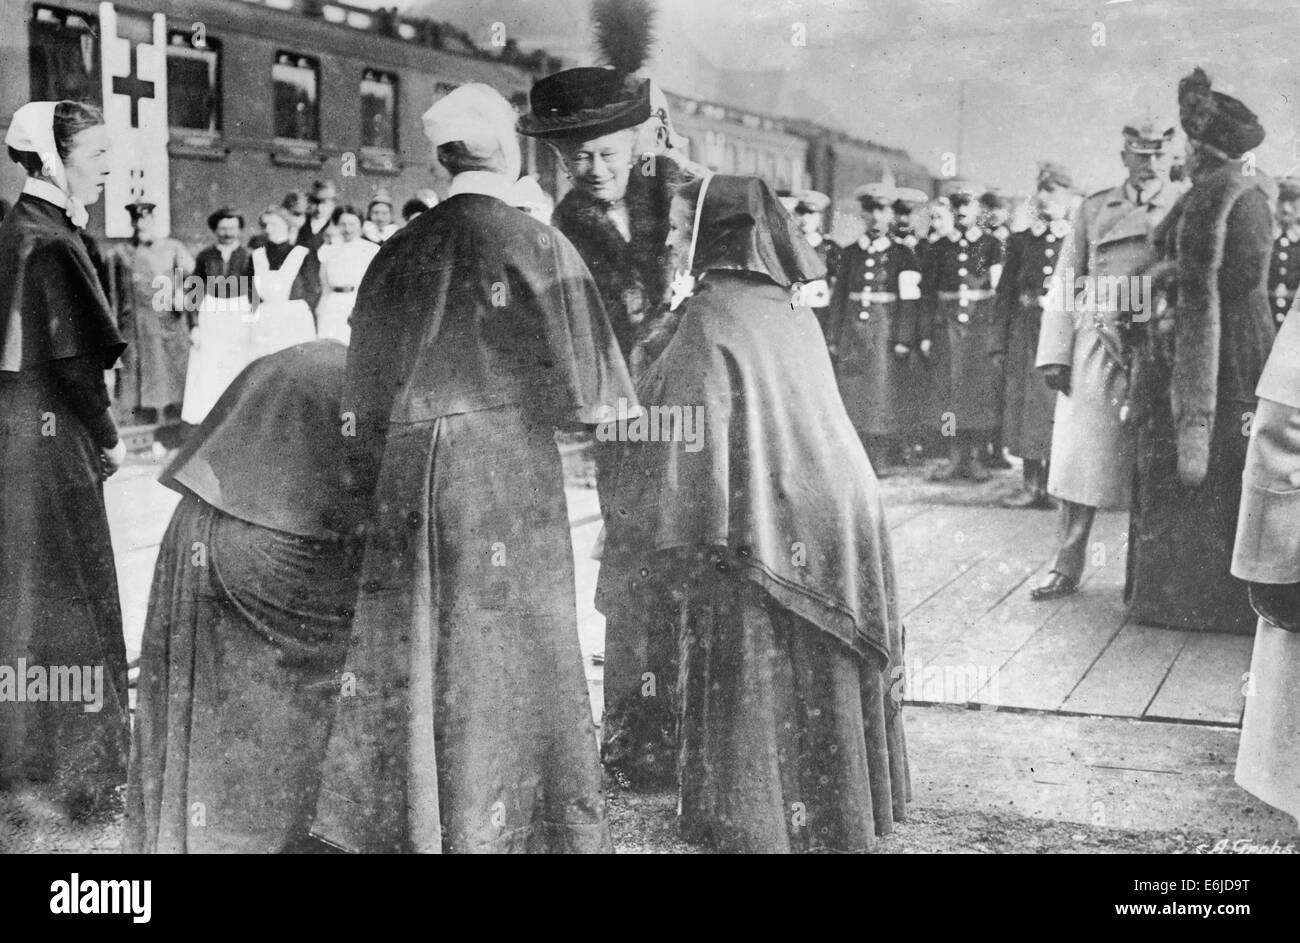 Kaiserin di addio alla Croce Rossa sorelle - Kaiserin Augusta Victoria di Schleswig-Holstein (1858-1921), moglie di Guglielmo II di Germania, in corrispondenza di una stazione ferroviaria con le suore durante la I guerra mondiale, circa 1915 Foto Stock